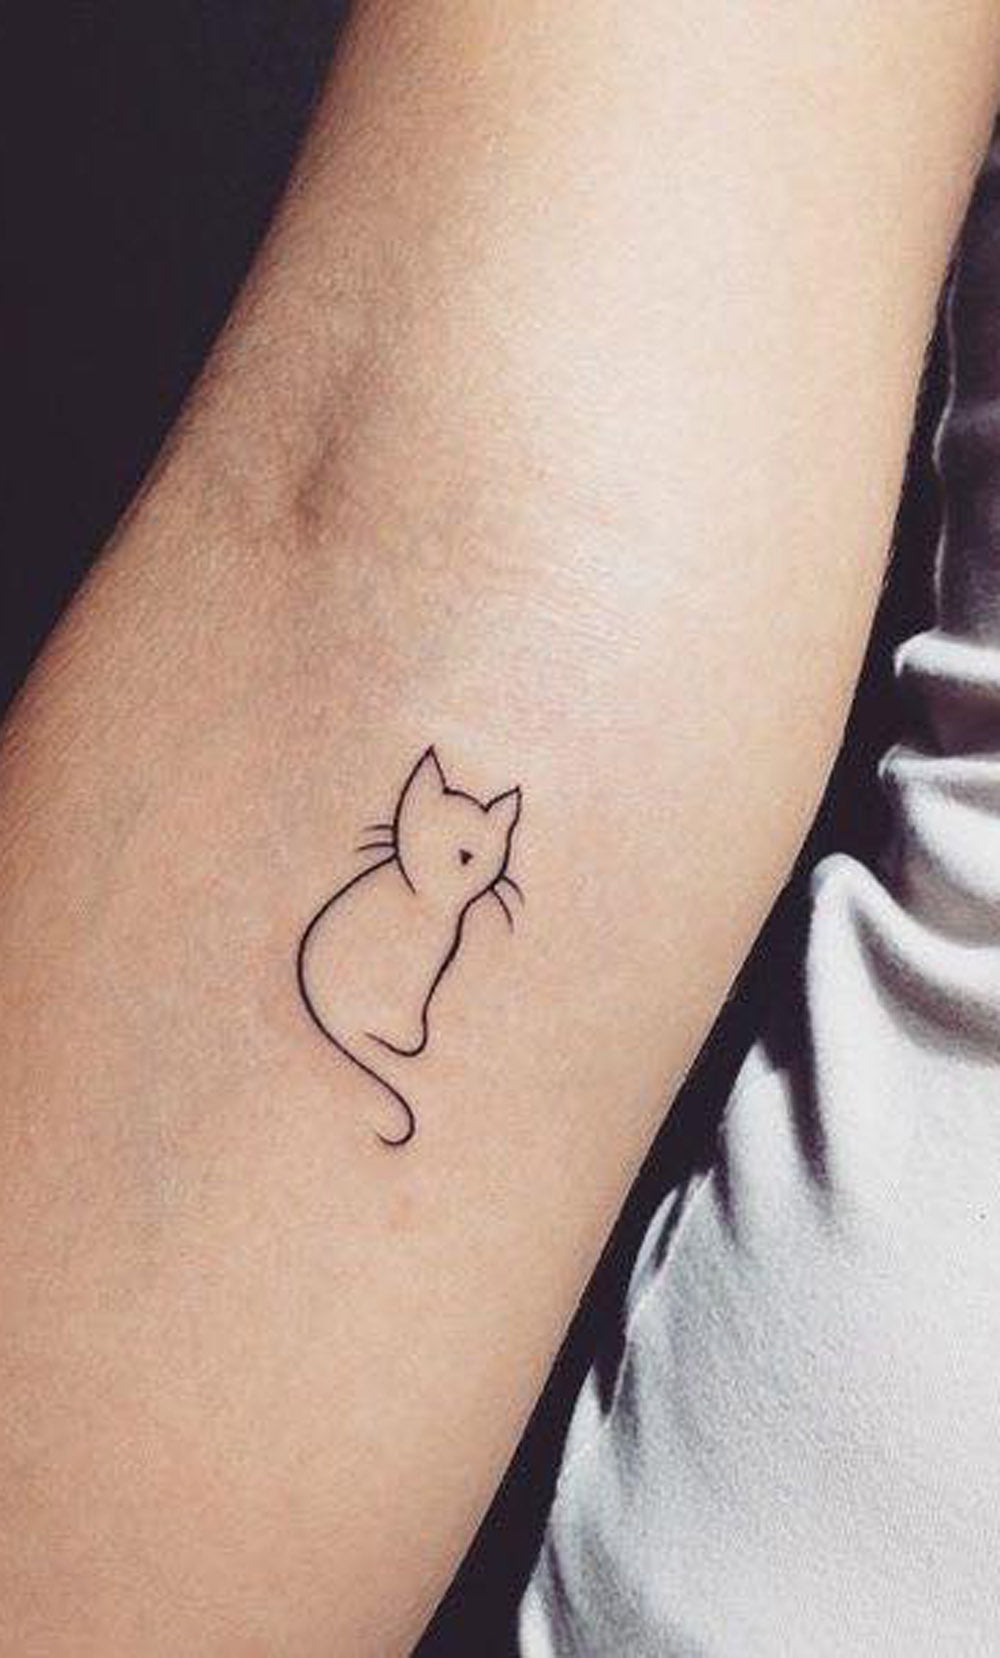 Simple Minimalistic Cat Portrait Outline Inner Arm Tattoo Ideas for Teenagers - Small Kitty Wrist Tatt -  Idées de tatouage de poignet de chat pour des femmes - www.MyBodiArt.com